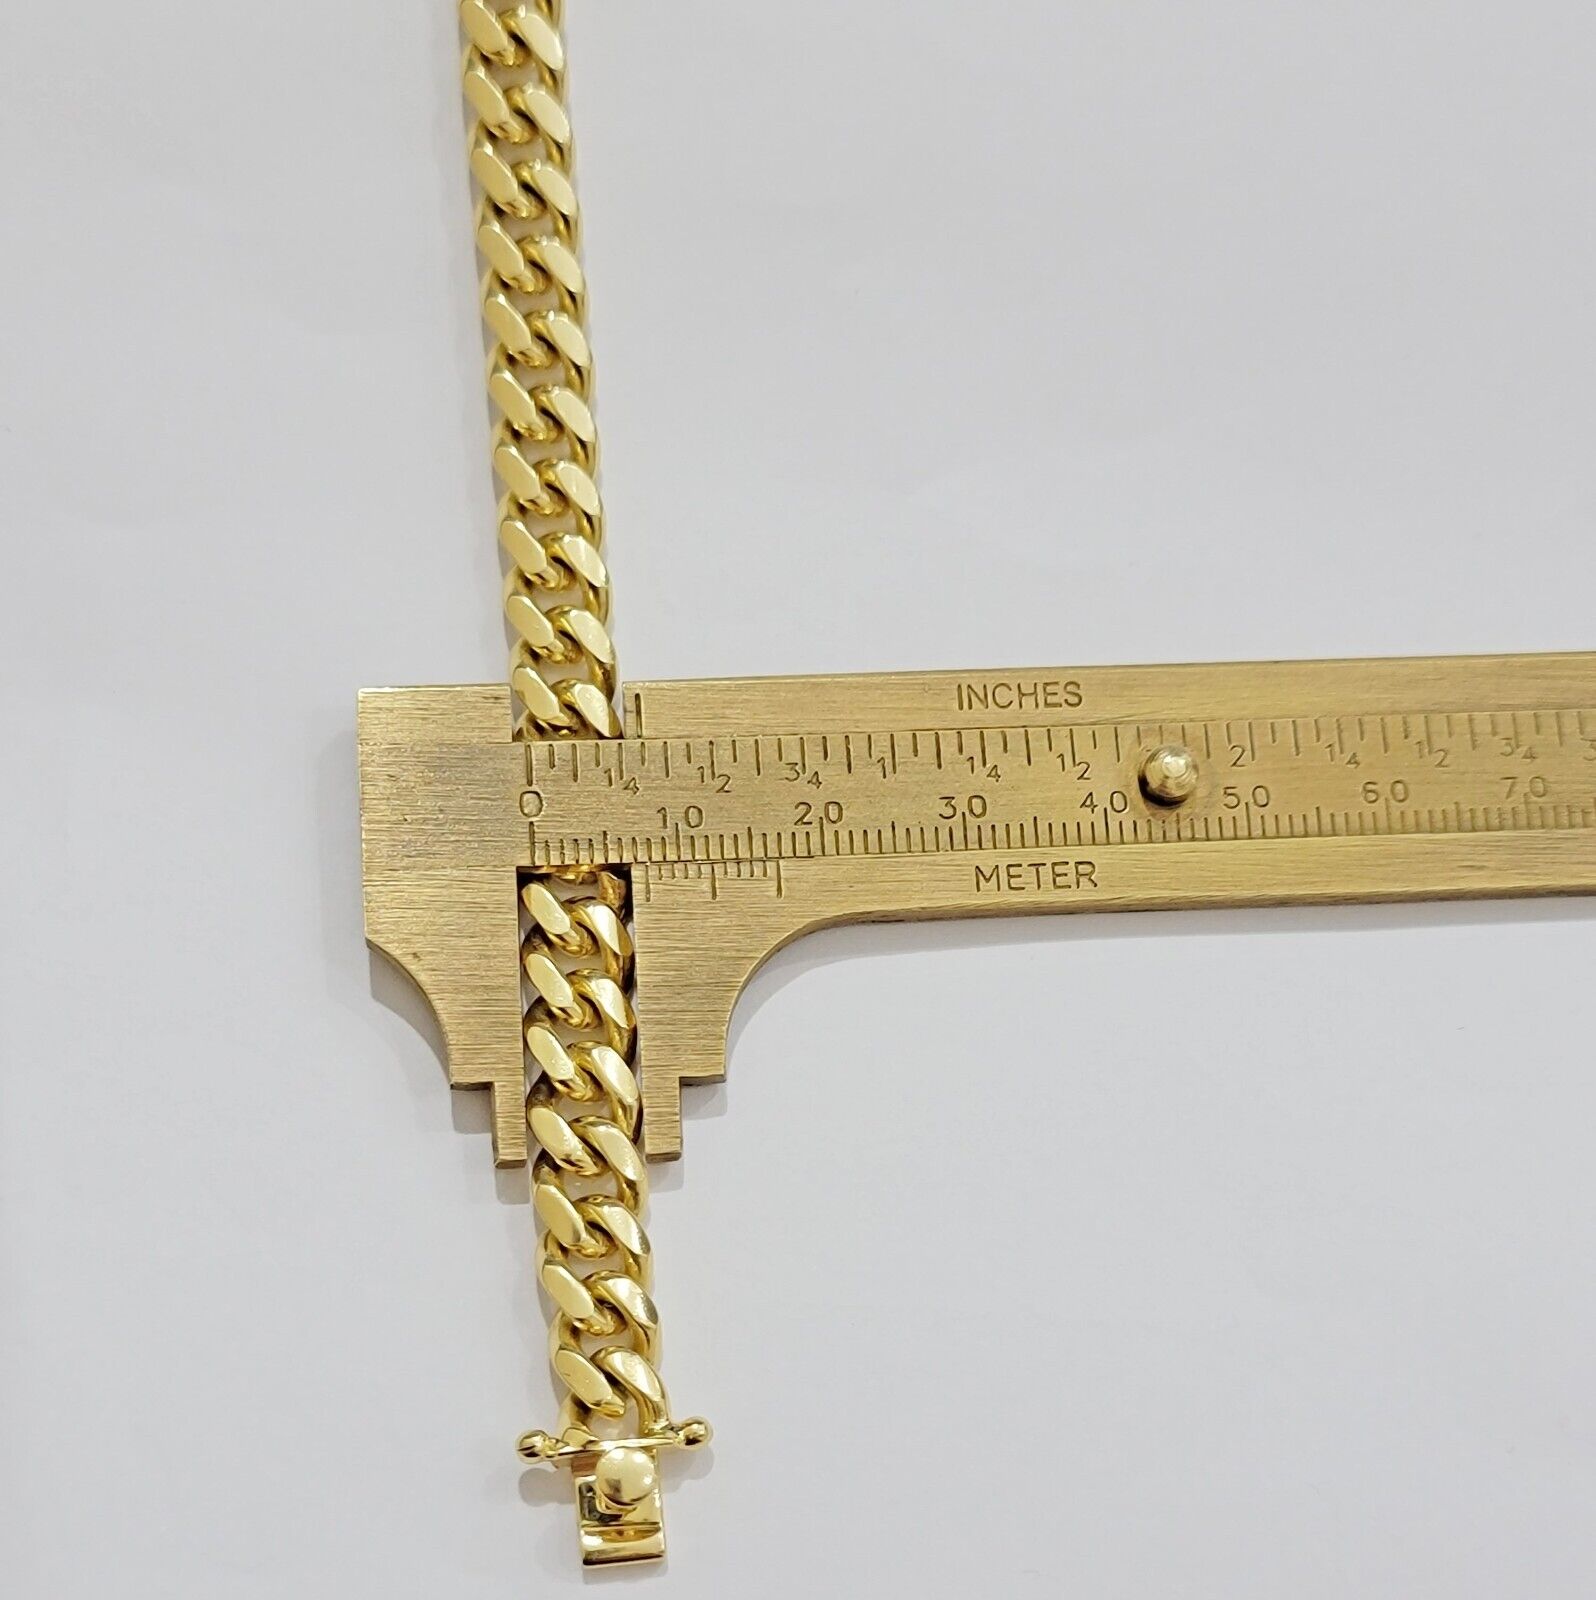 Solid 10k Gold Cuban Link Bracelet 8mm 7